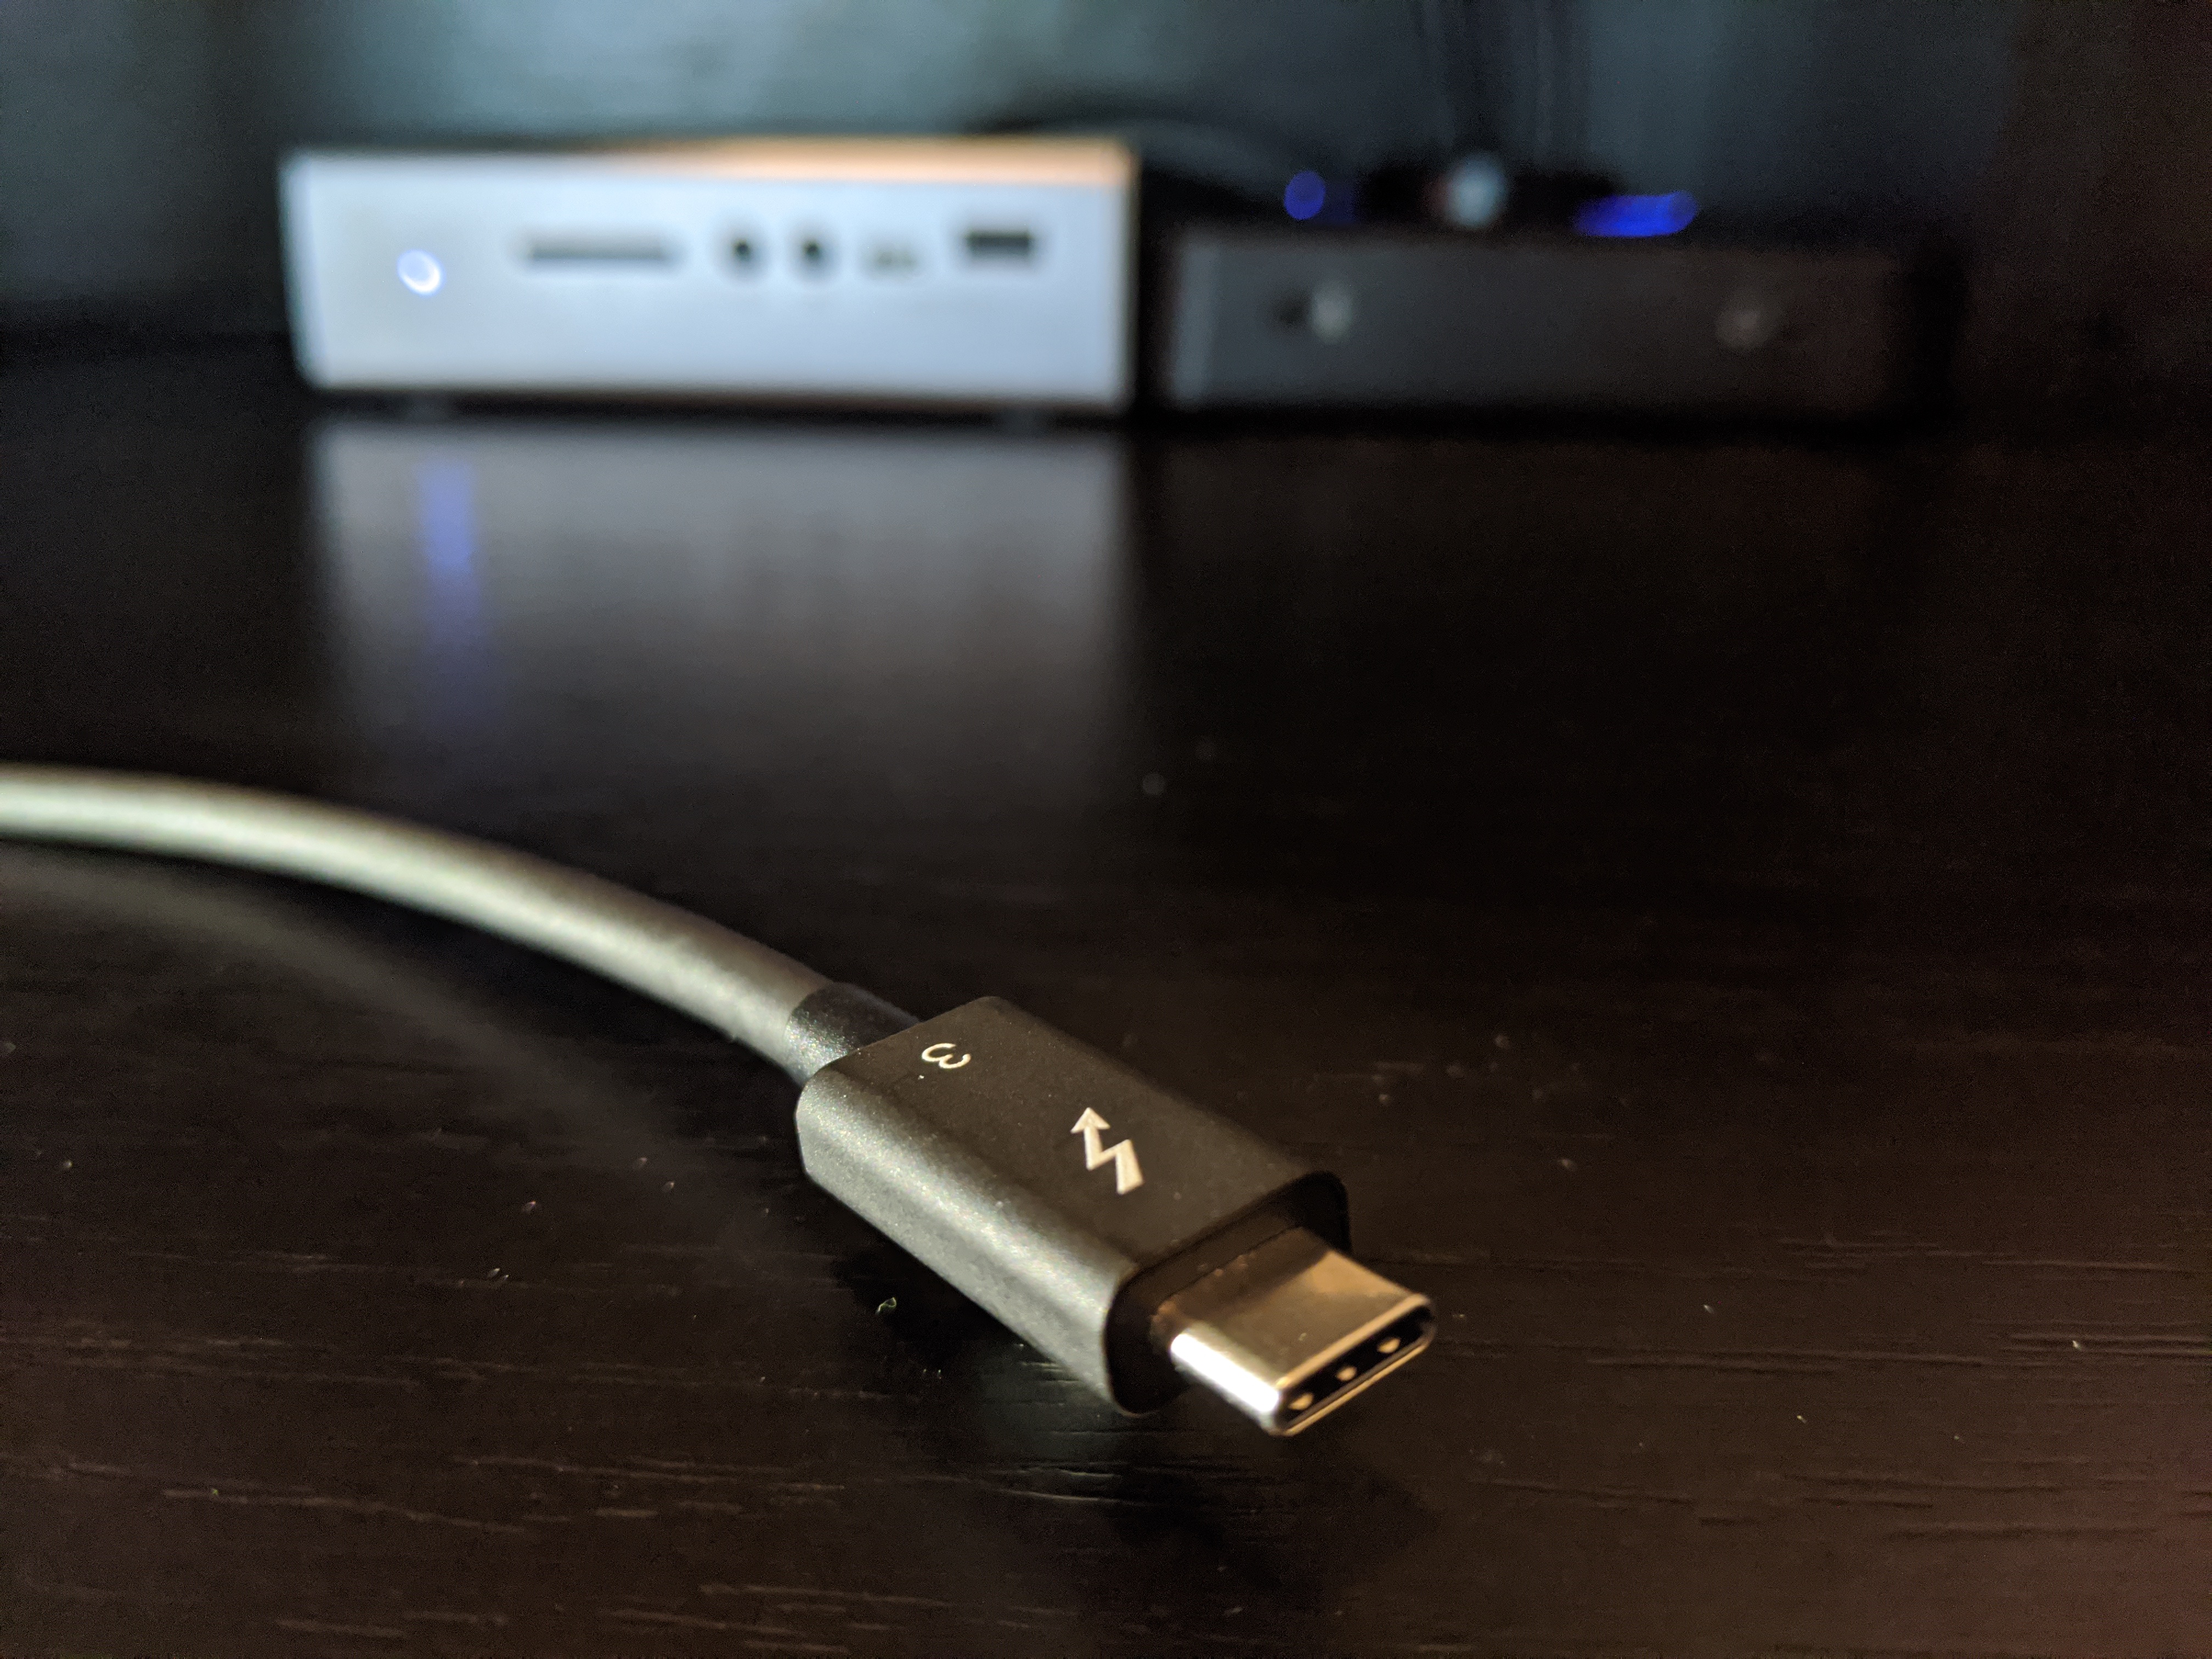 Adaptateur USB C vers double HDMI, convertisseur CLDAY USB Type C